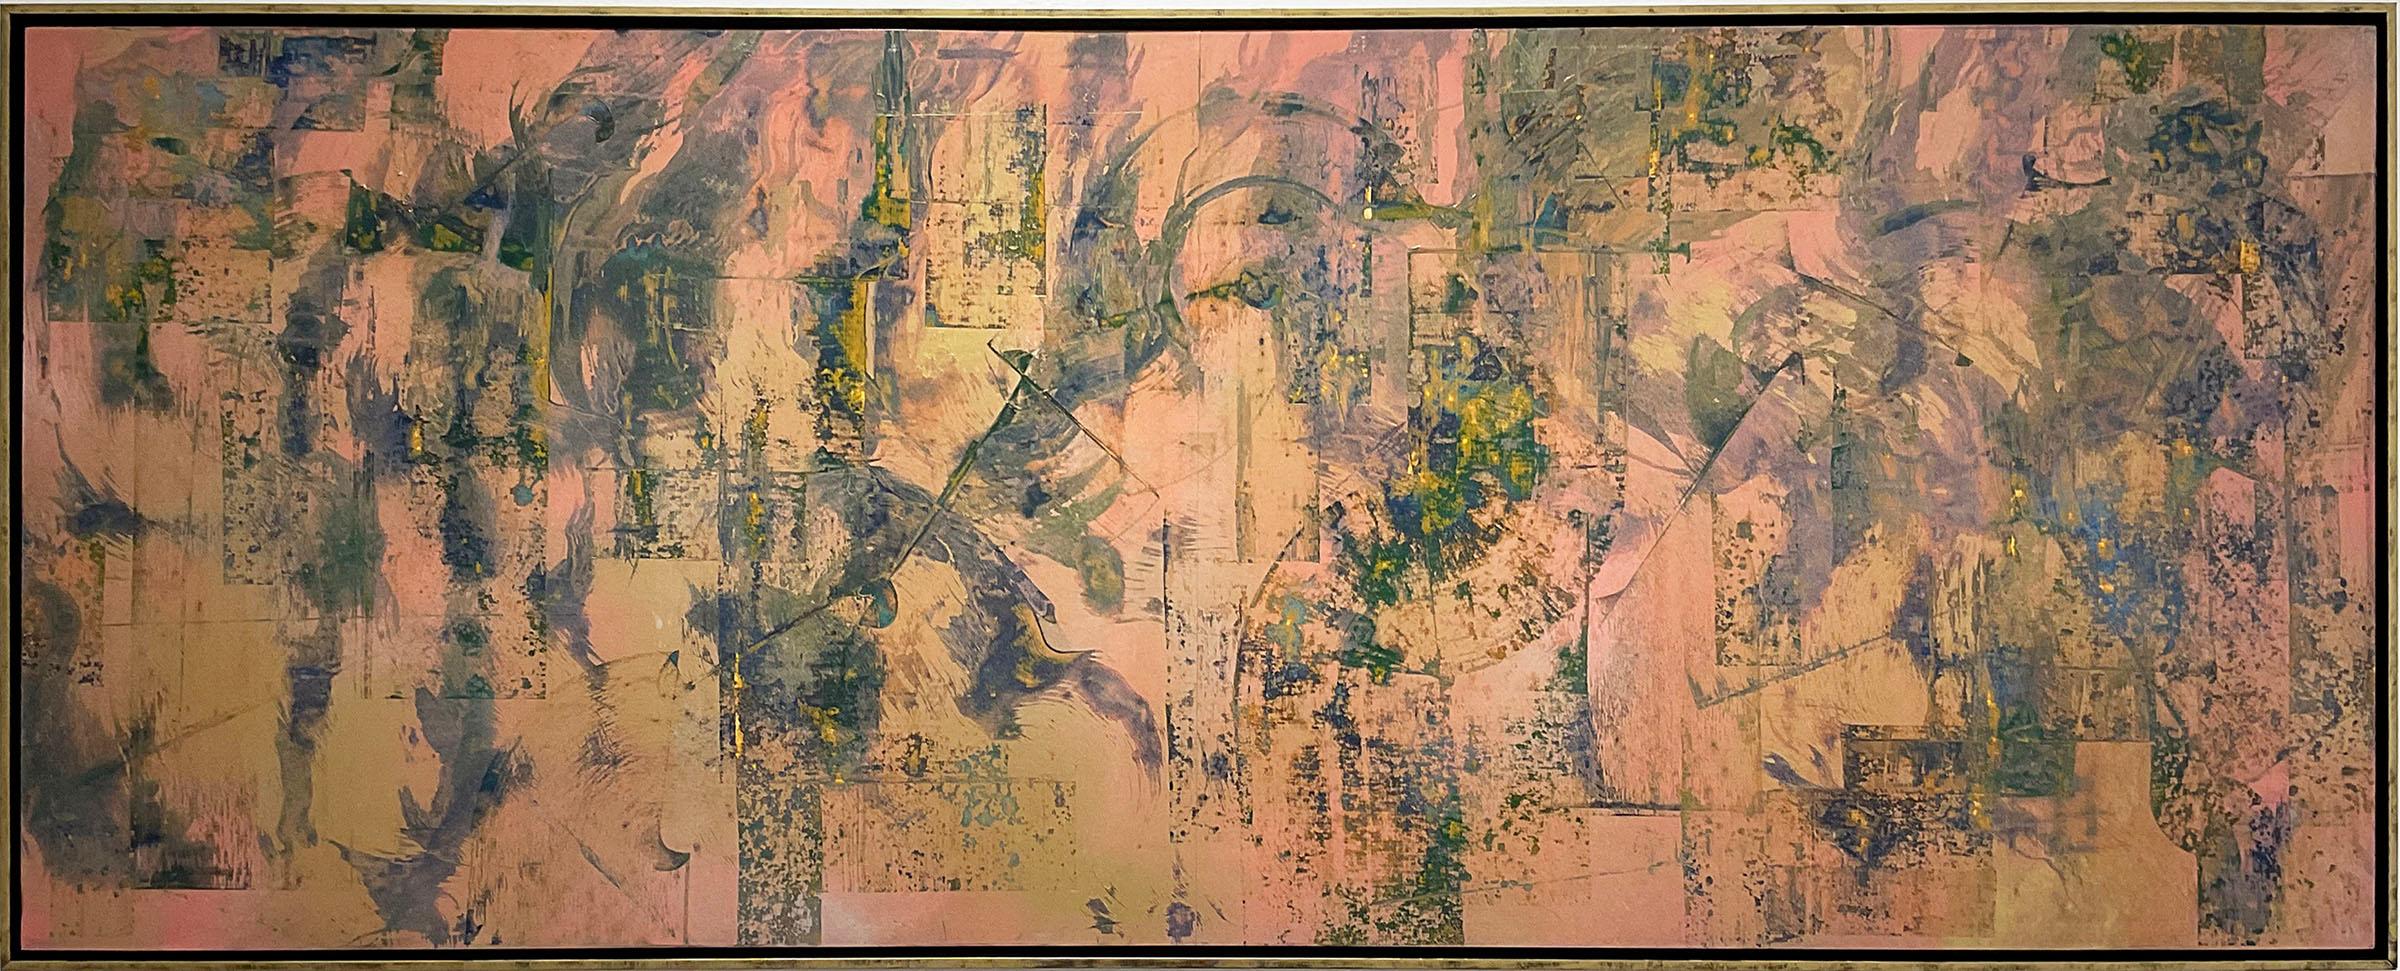 Abstract Drawing Bruce Murphy - Au-delà de l'esprit et du mat : peinture expressionniste abstraite pêche et or